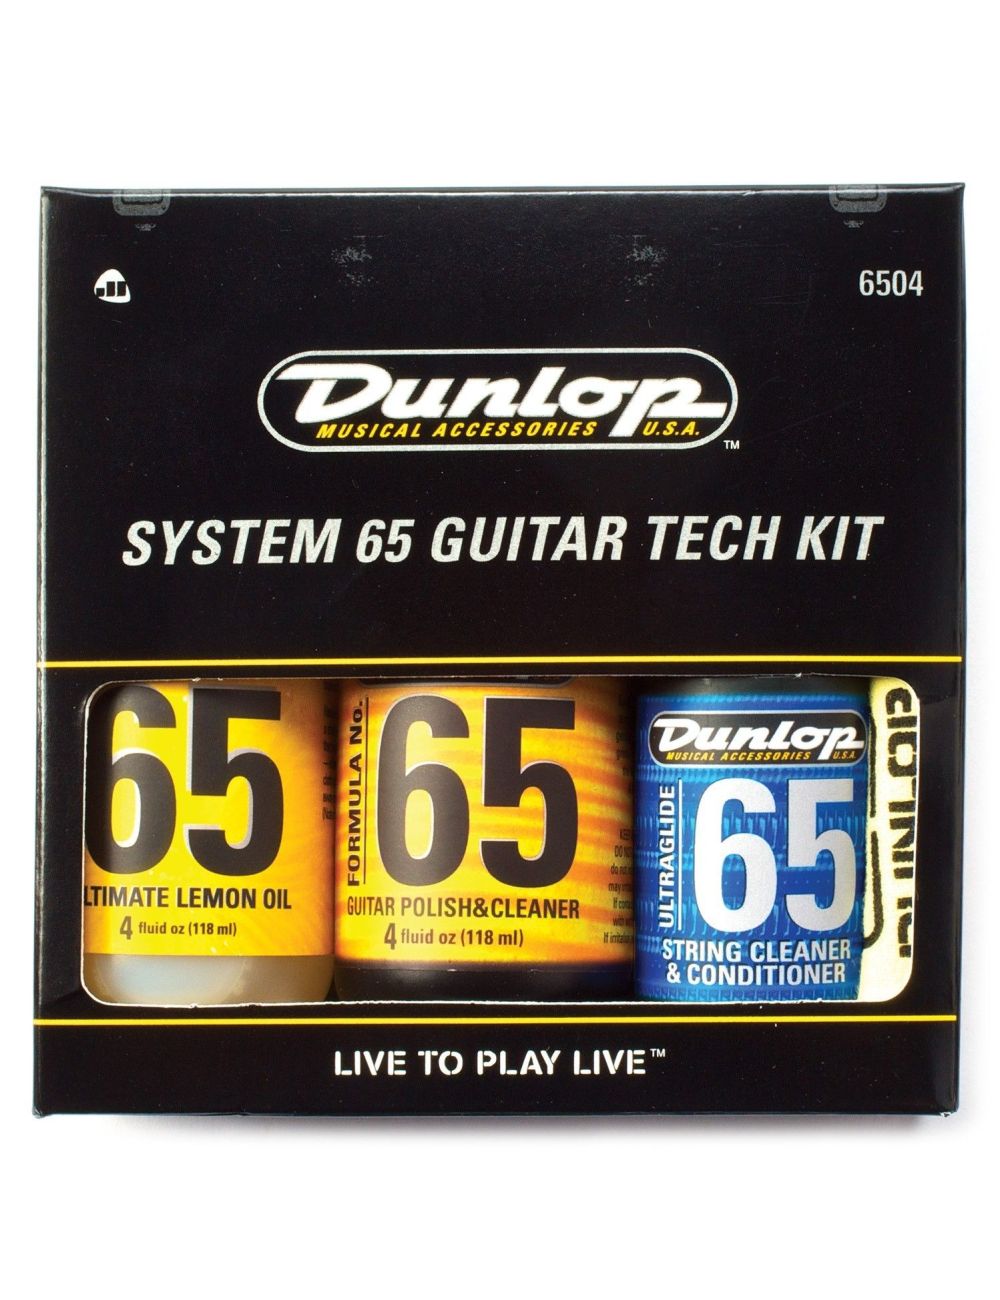 Dunlop System 6504 Guitar Tech Kit